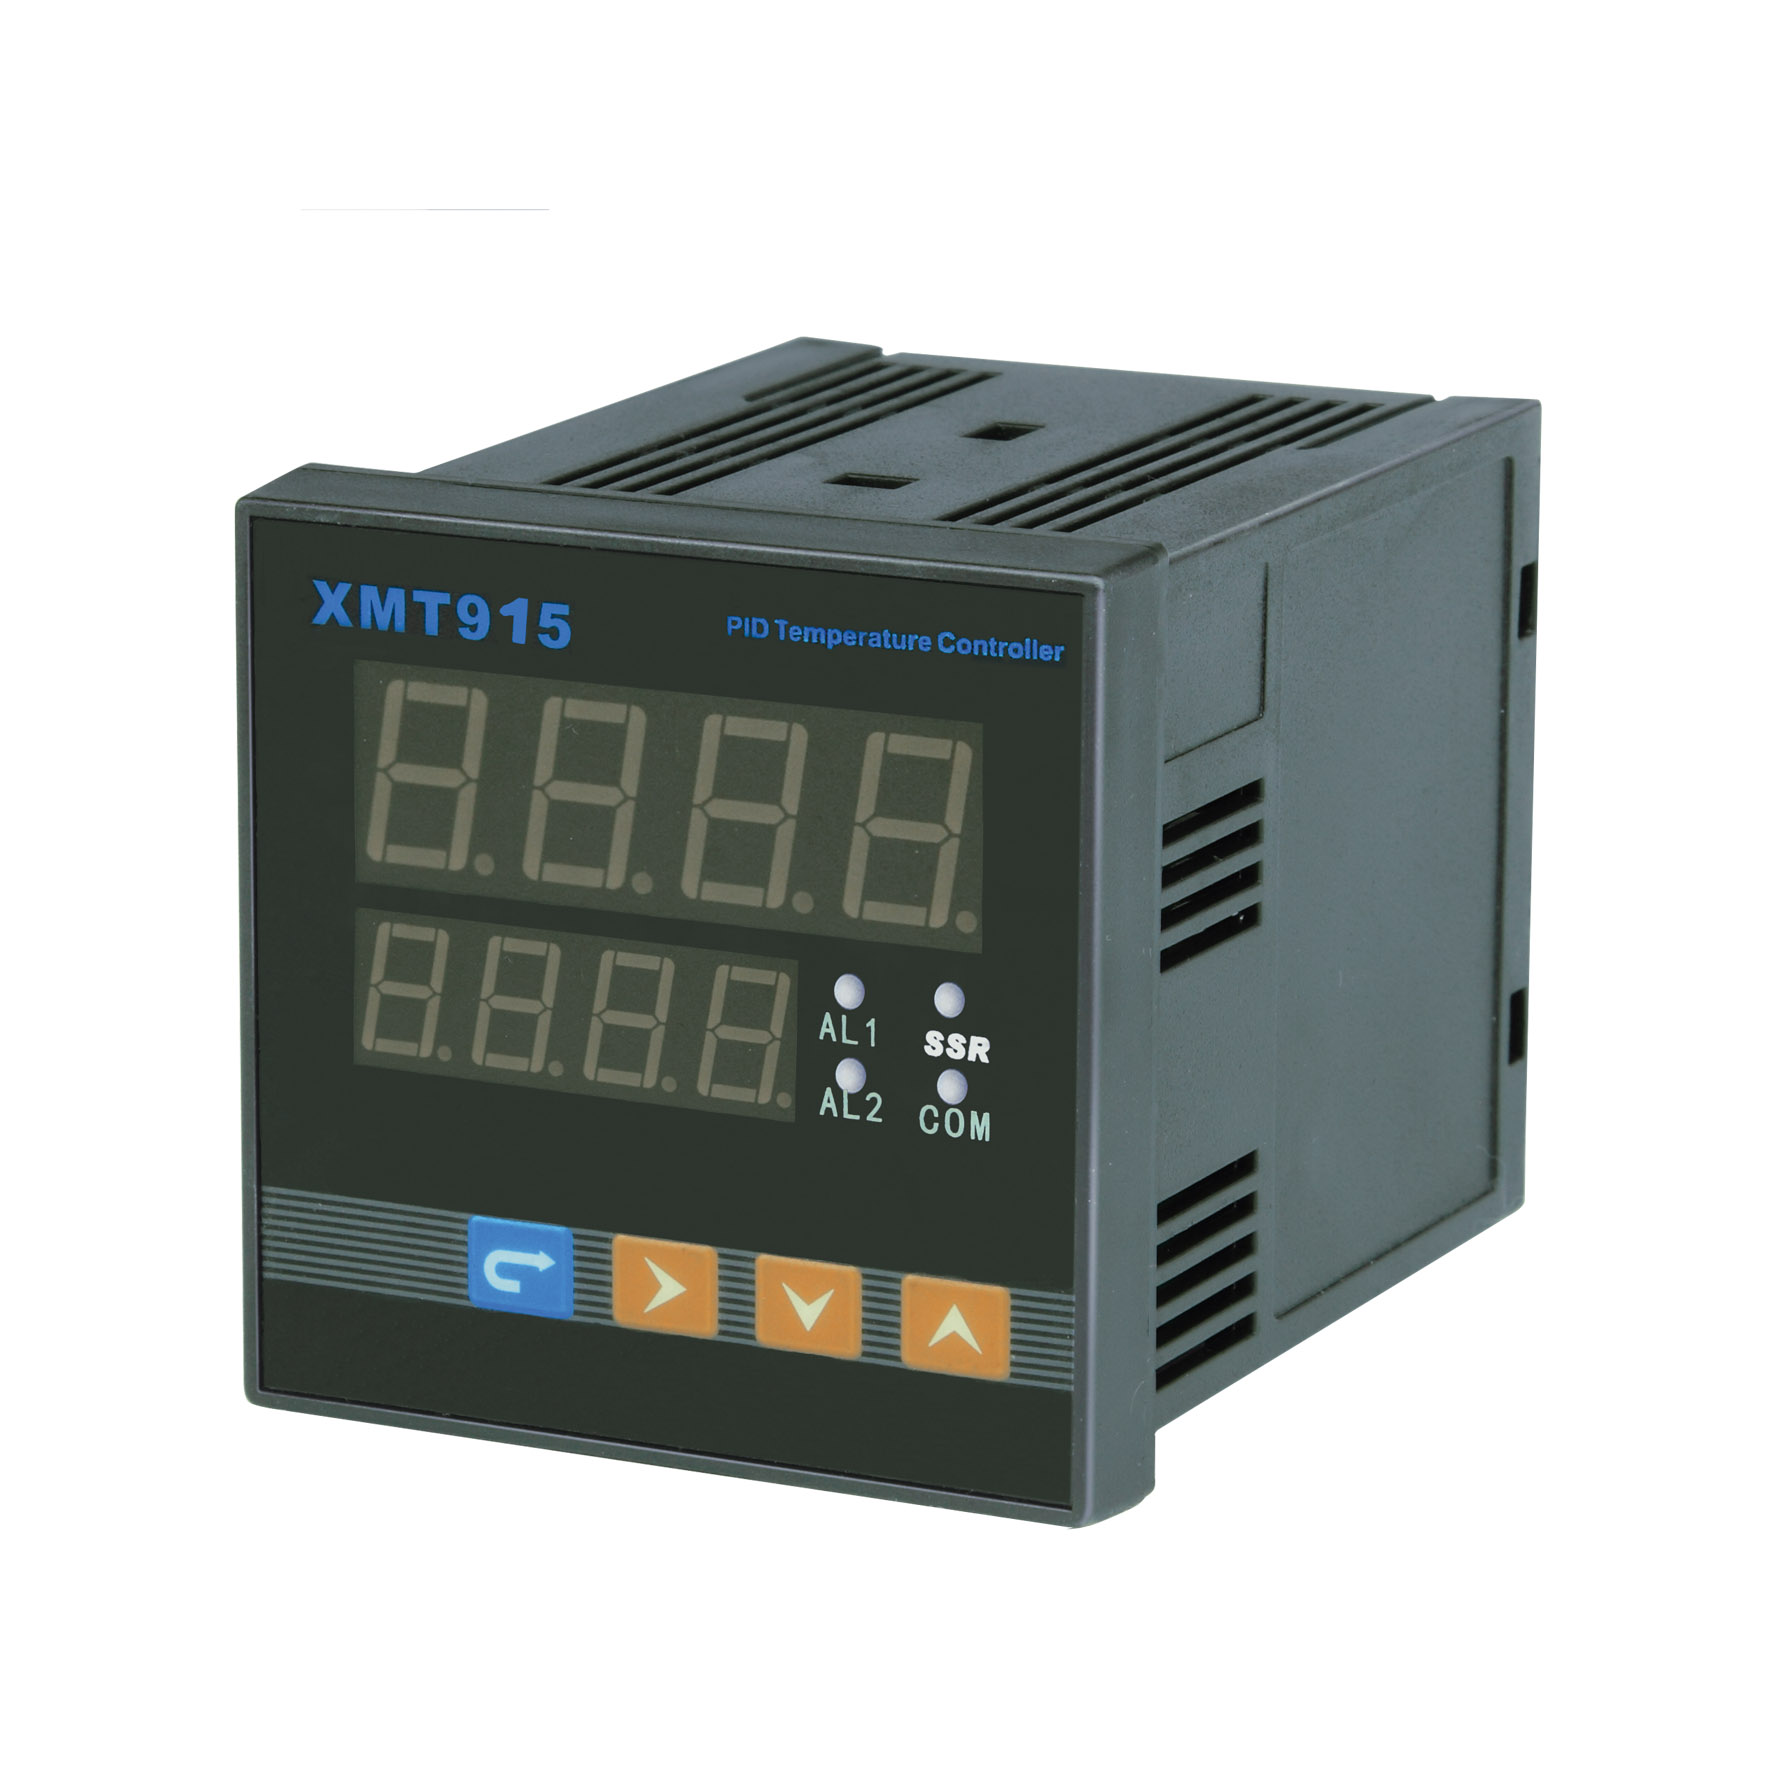 XMT615XMT915智能PID温度控制仪 温度控制器 温控器 温控仪 控温仪 温控数显表 数显温